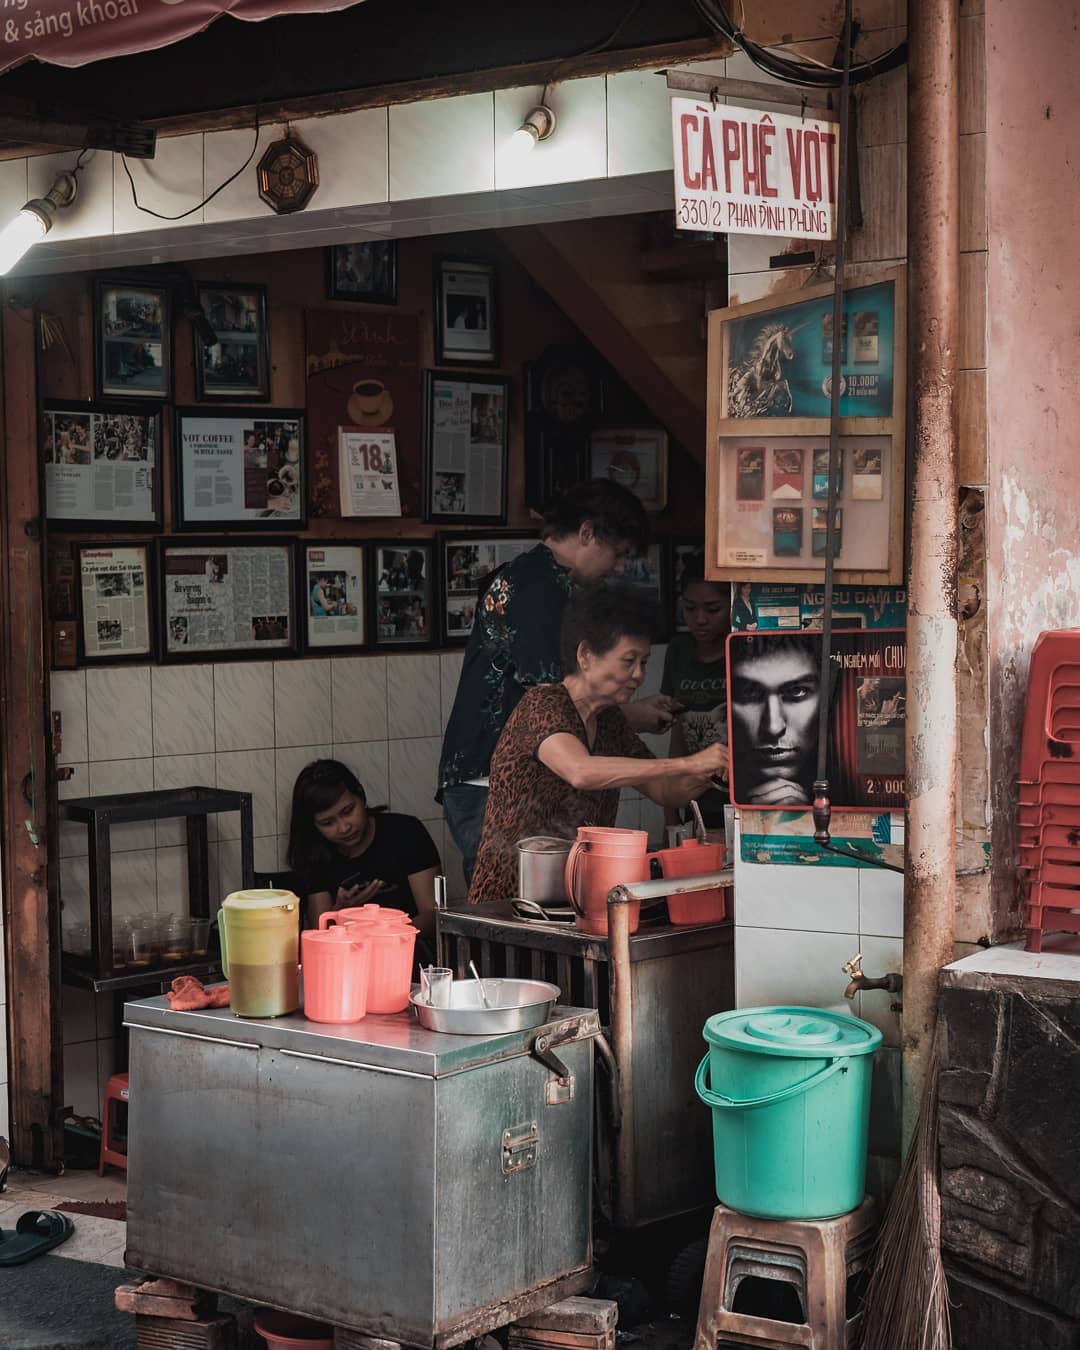 Cà phê vợt, nét văn hóa đường phố đặc trưng của Sài Gòn xưa. Ảnh: @rutagotstories.